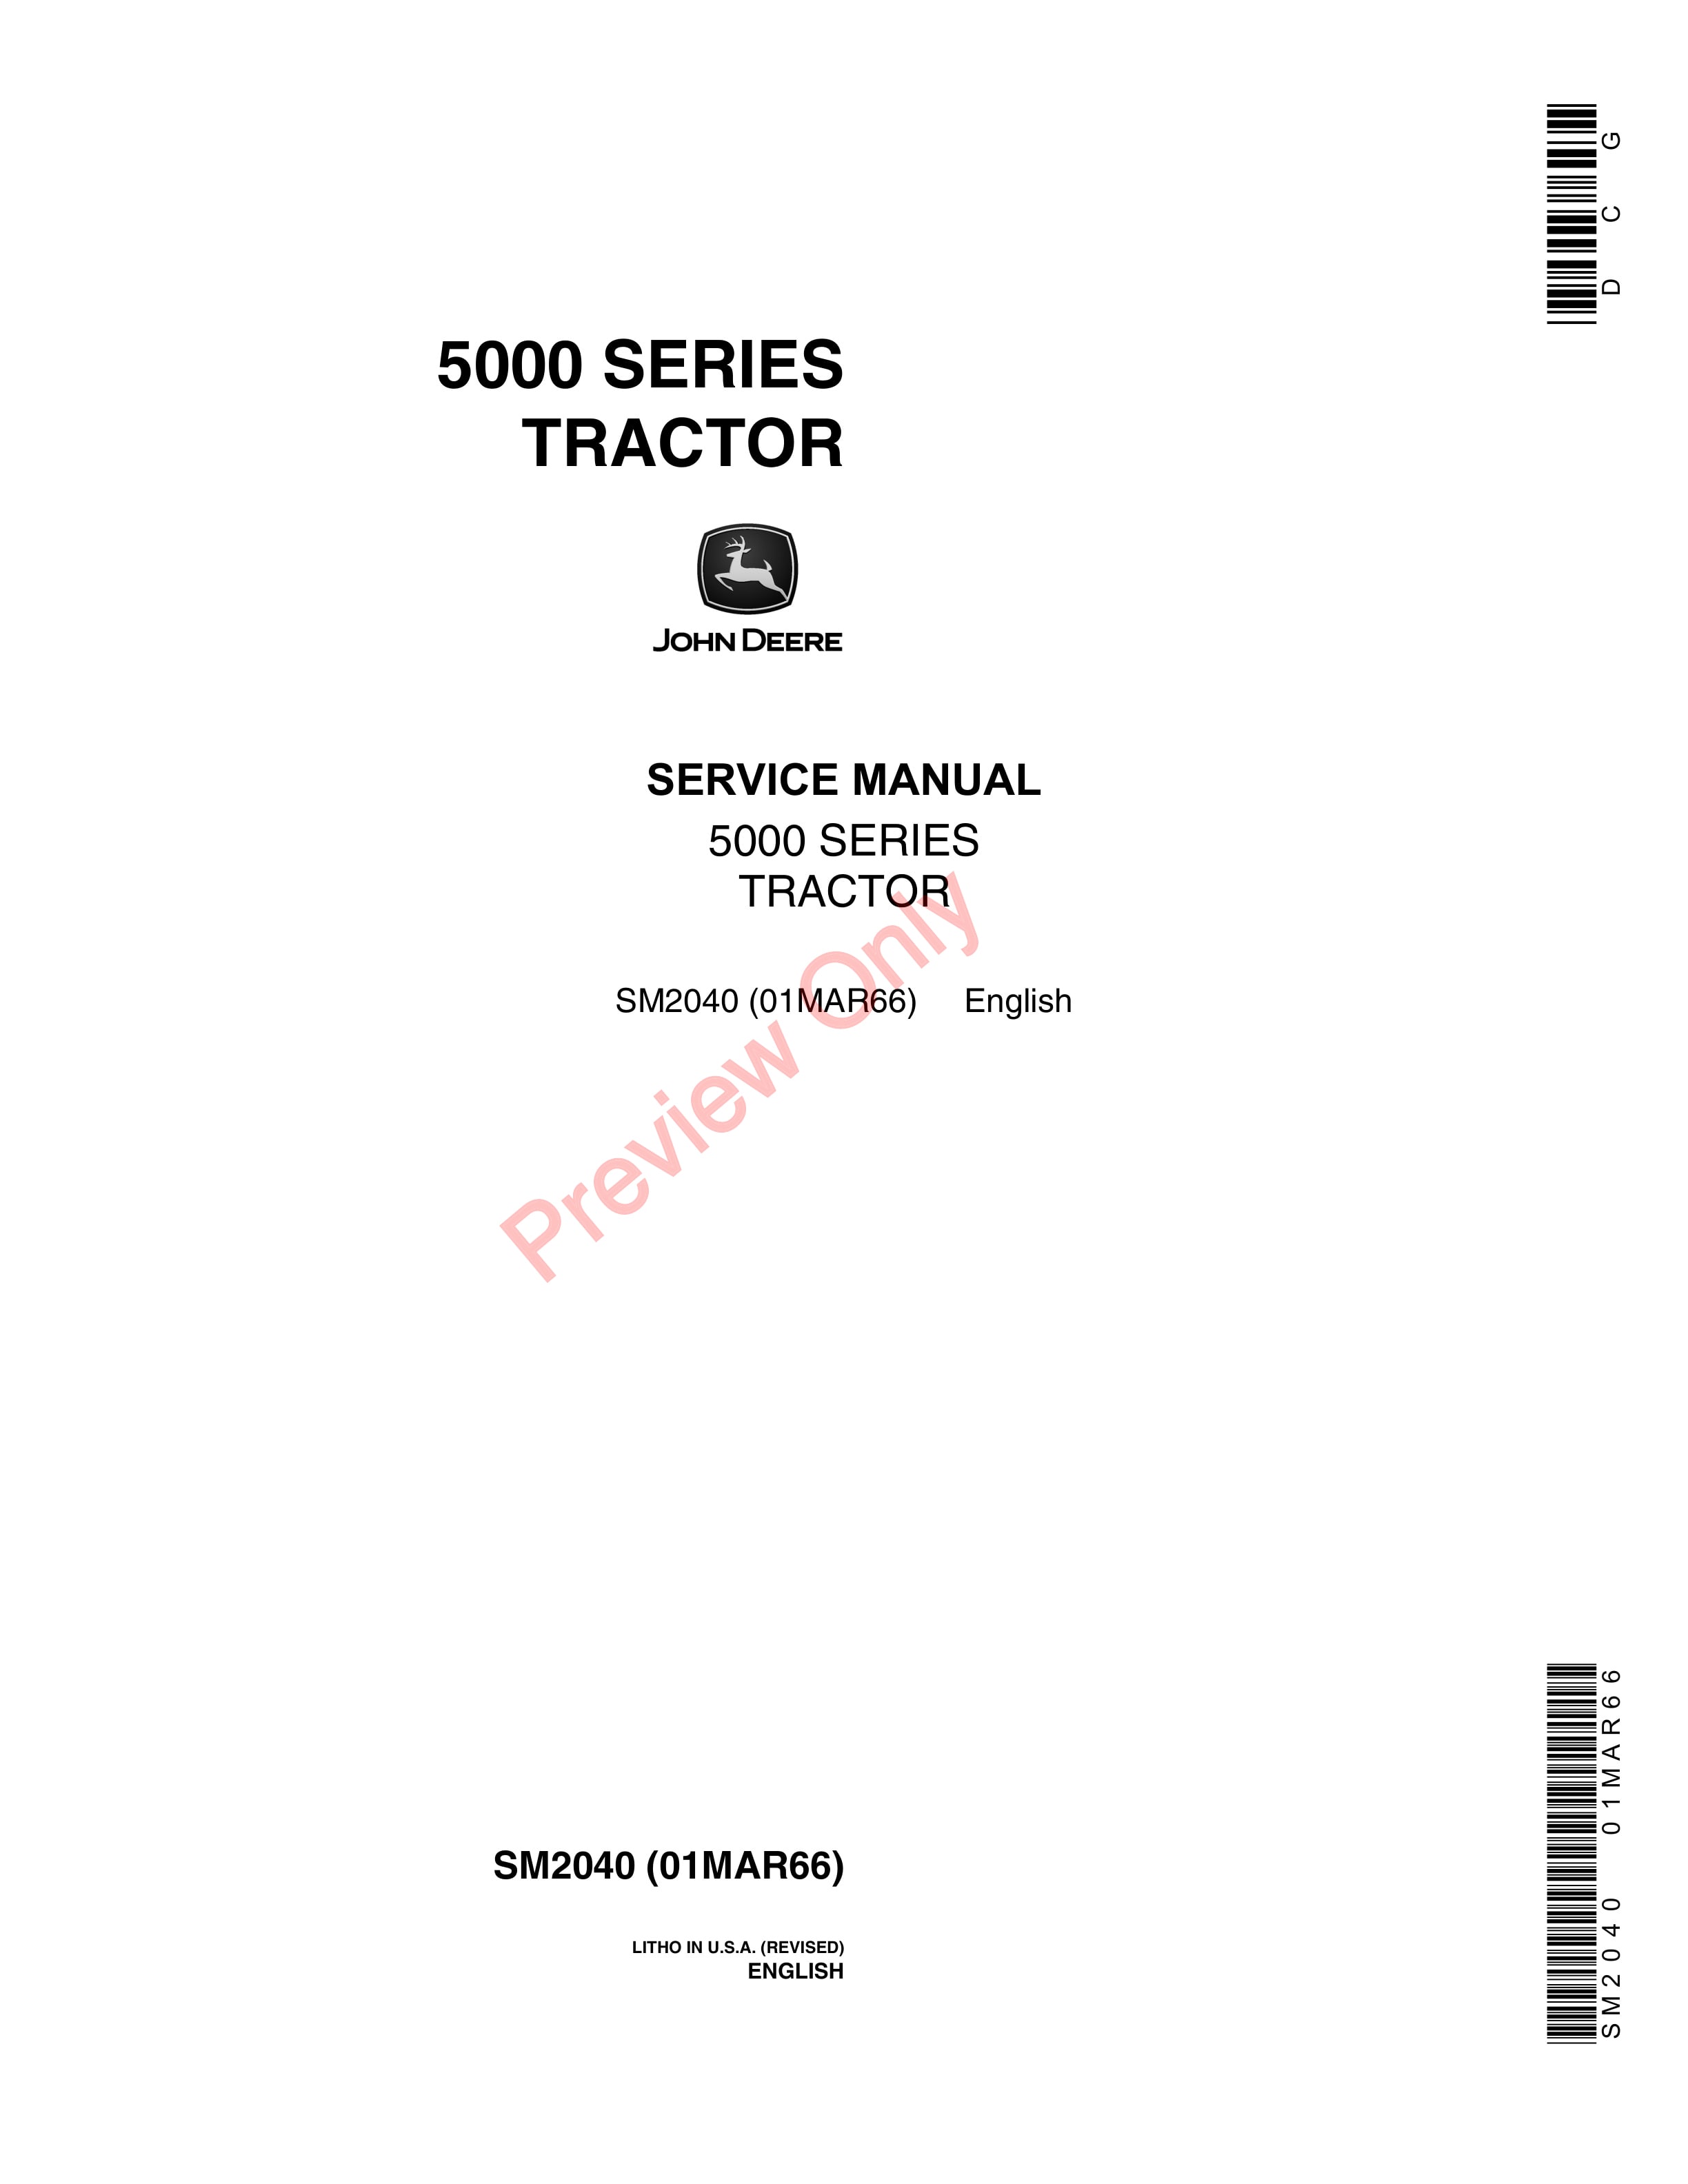 John Deere 5000 Series Tractors Service Manual SM2040 01MAR66-1